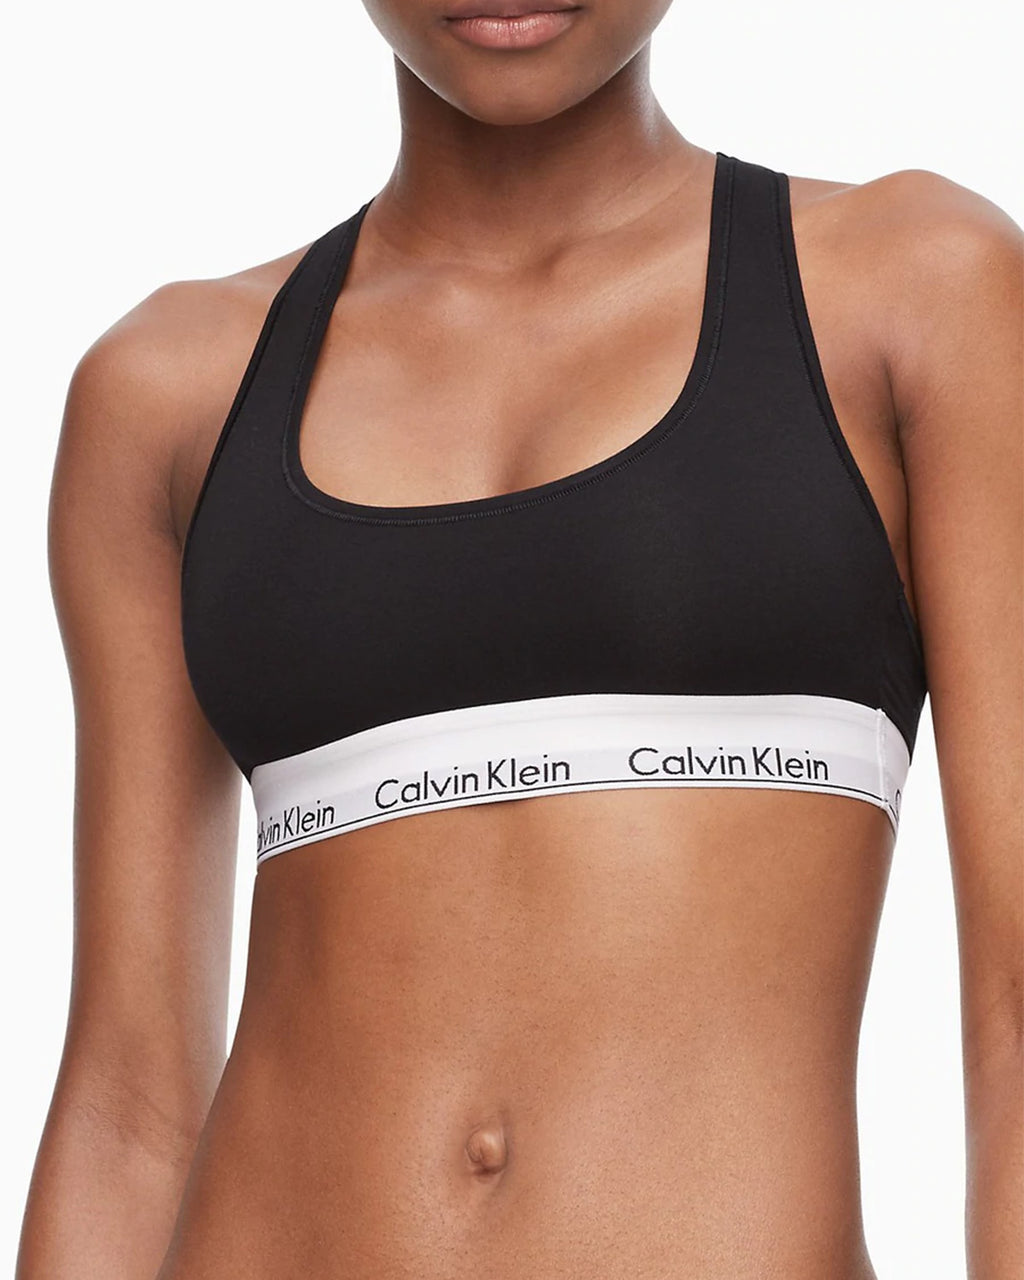 Buy Calvin Klein Modern Cotton Plus Bralette from Next Finland